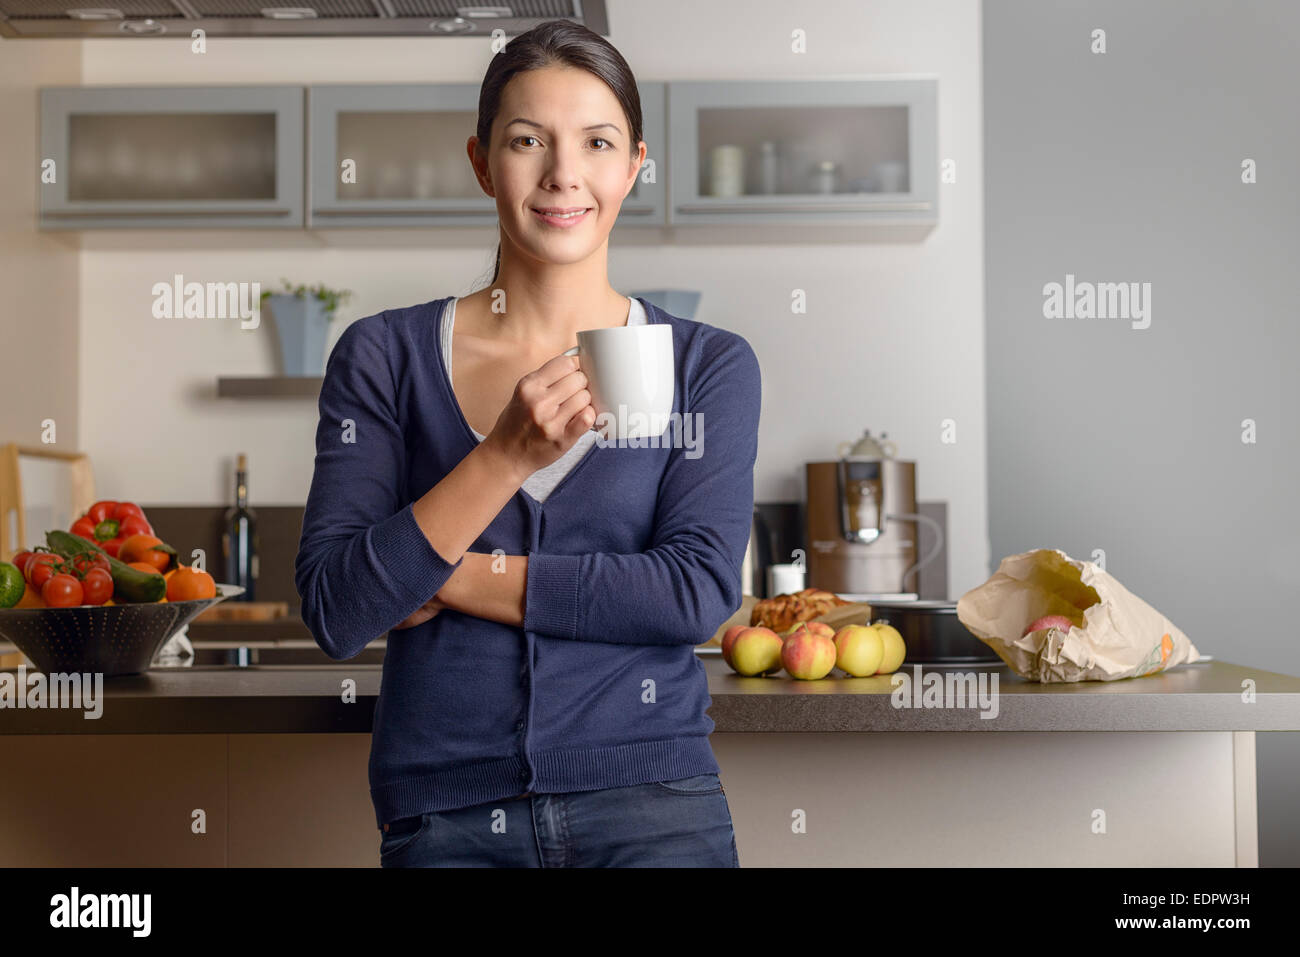 Glückliche zufriedene Hausfrau in ihrer Küche geben der Kamera ein warmen freundliches Lächeln, wie sie mit einer Tasse Kaffee mit frischen entspannt Stockfoto